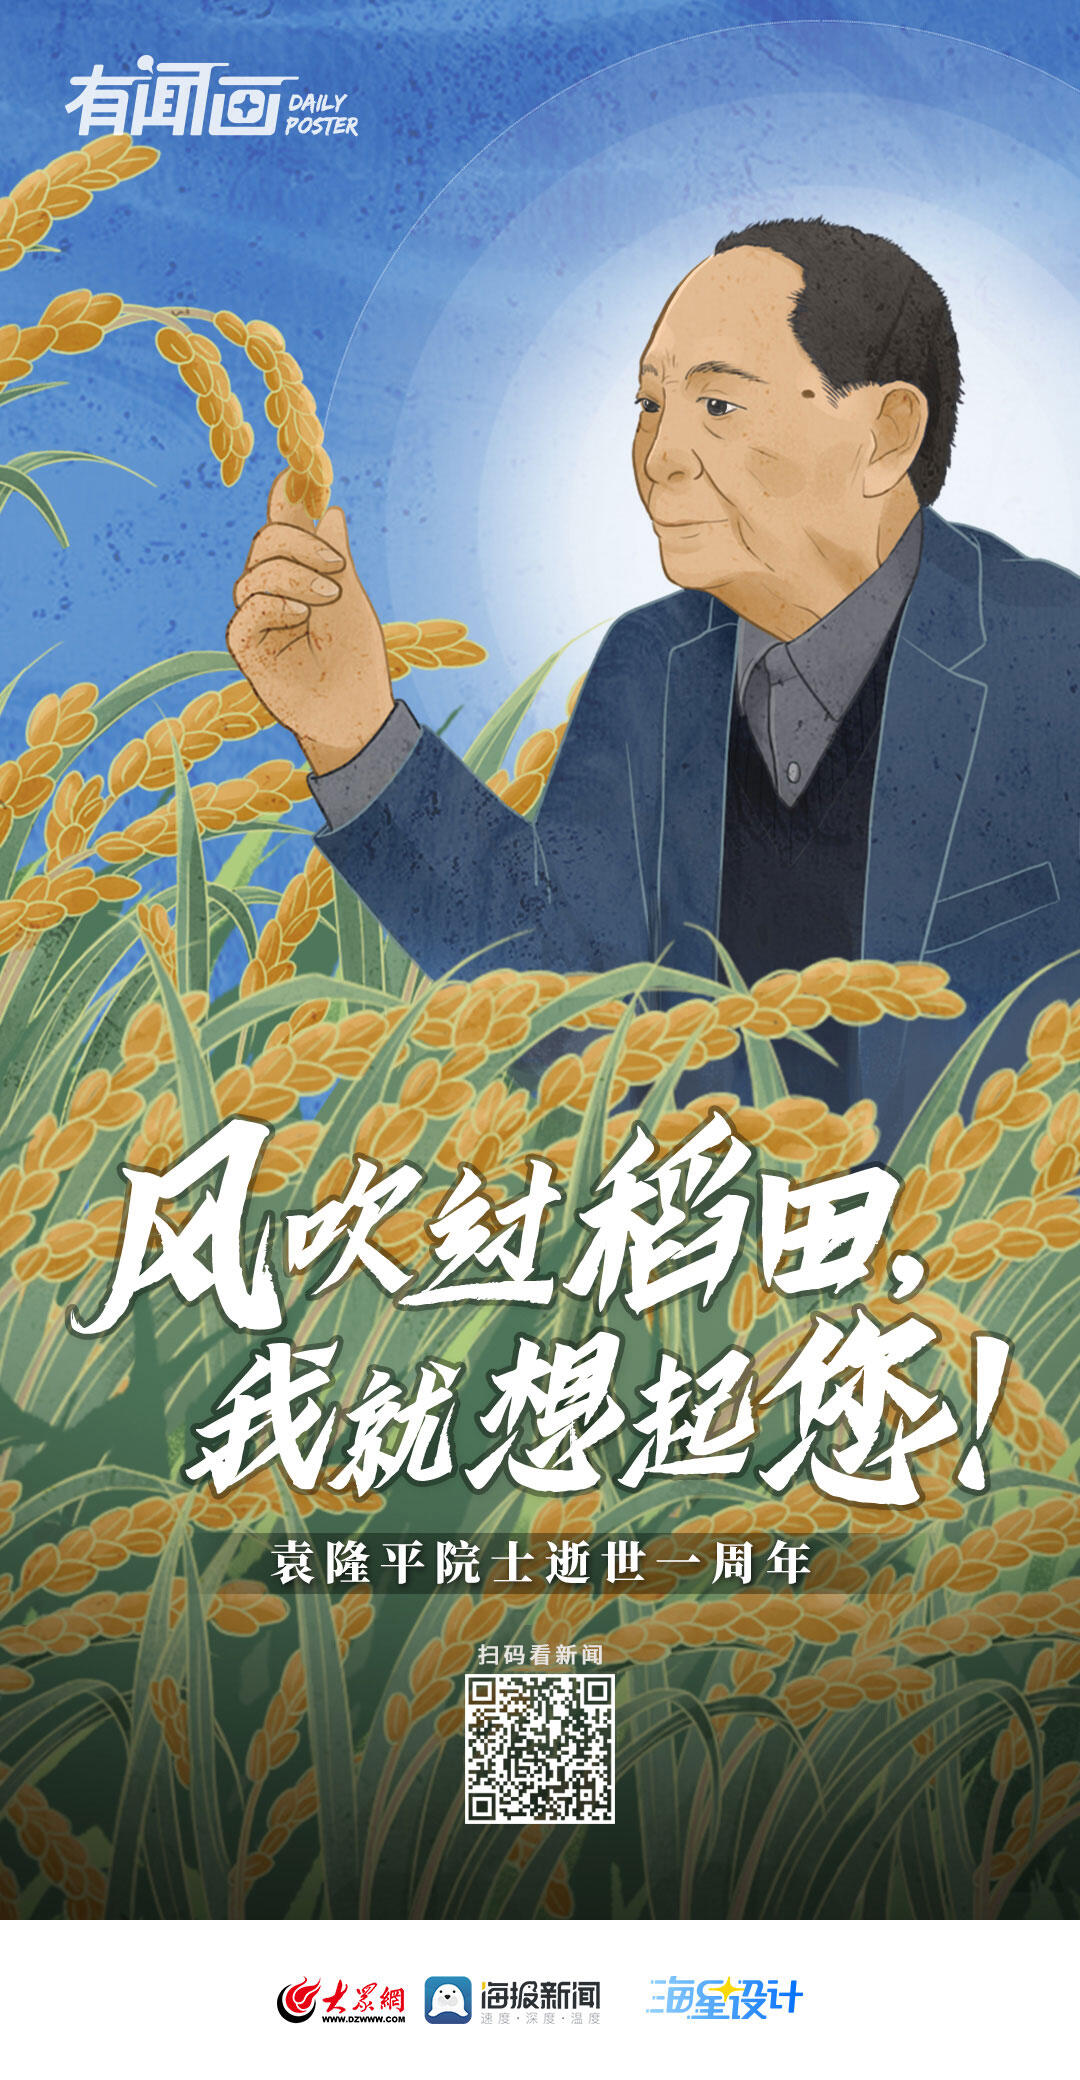 风吹过稻田我又想您了是怎么回事，关于风吹过稻田我就想起您的新消息。